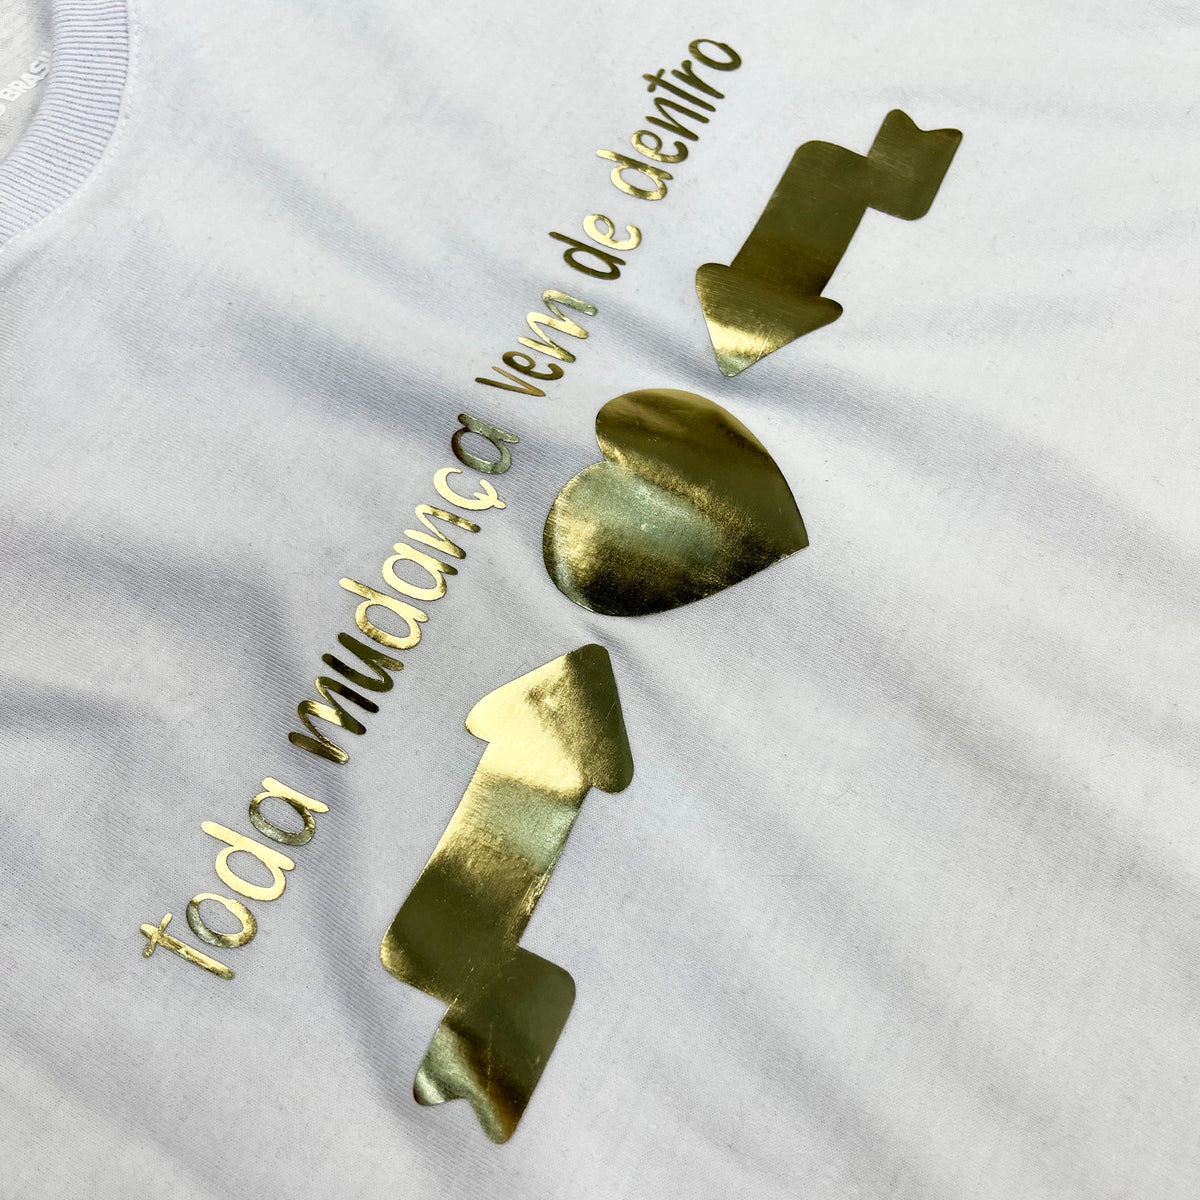 Camiseta Feminina Branca Toda Mudança Vem De Dentro Dourado